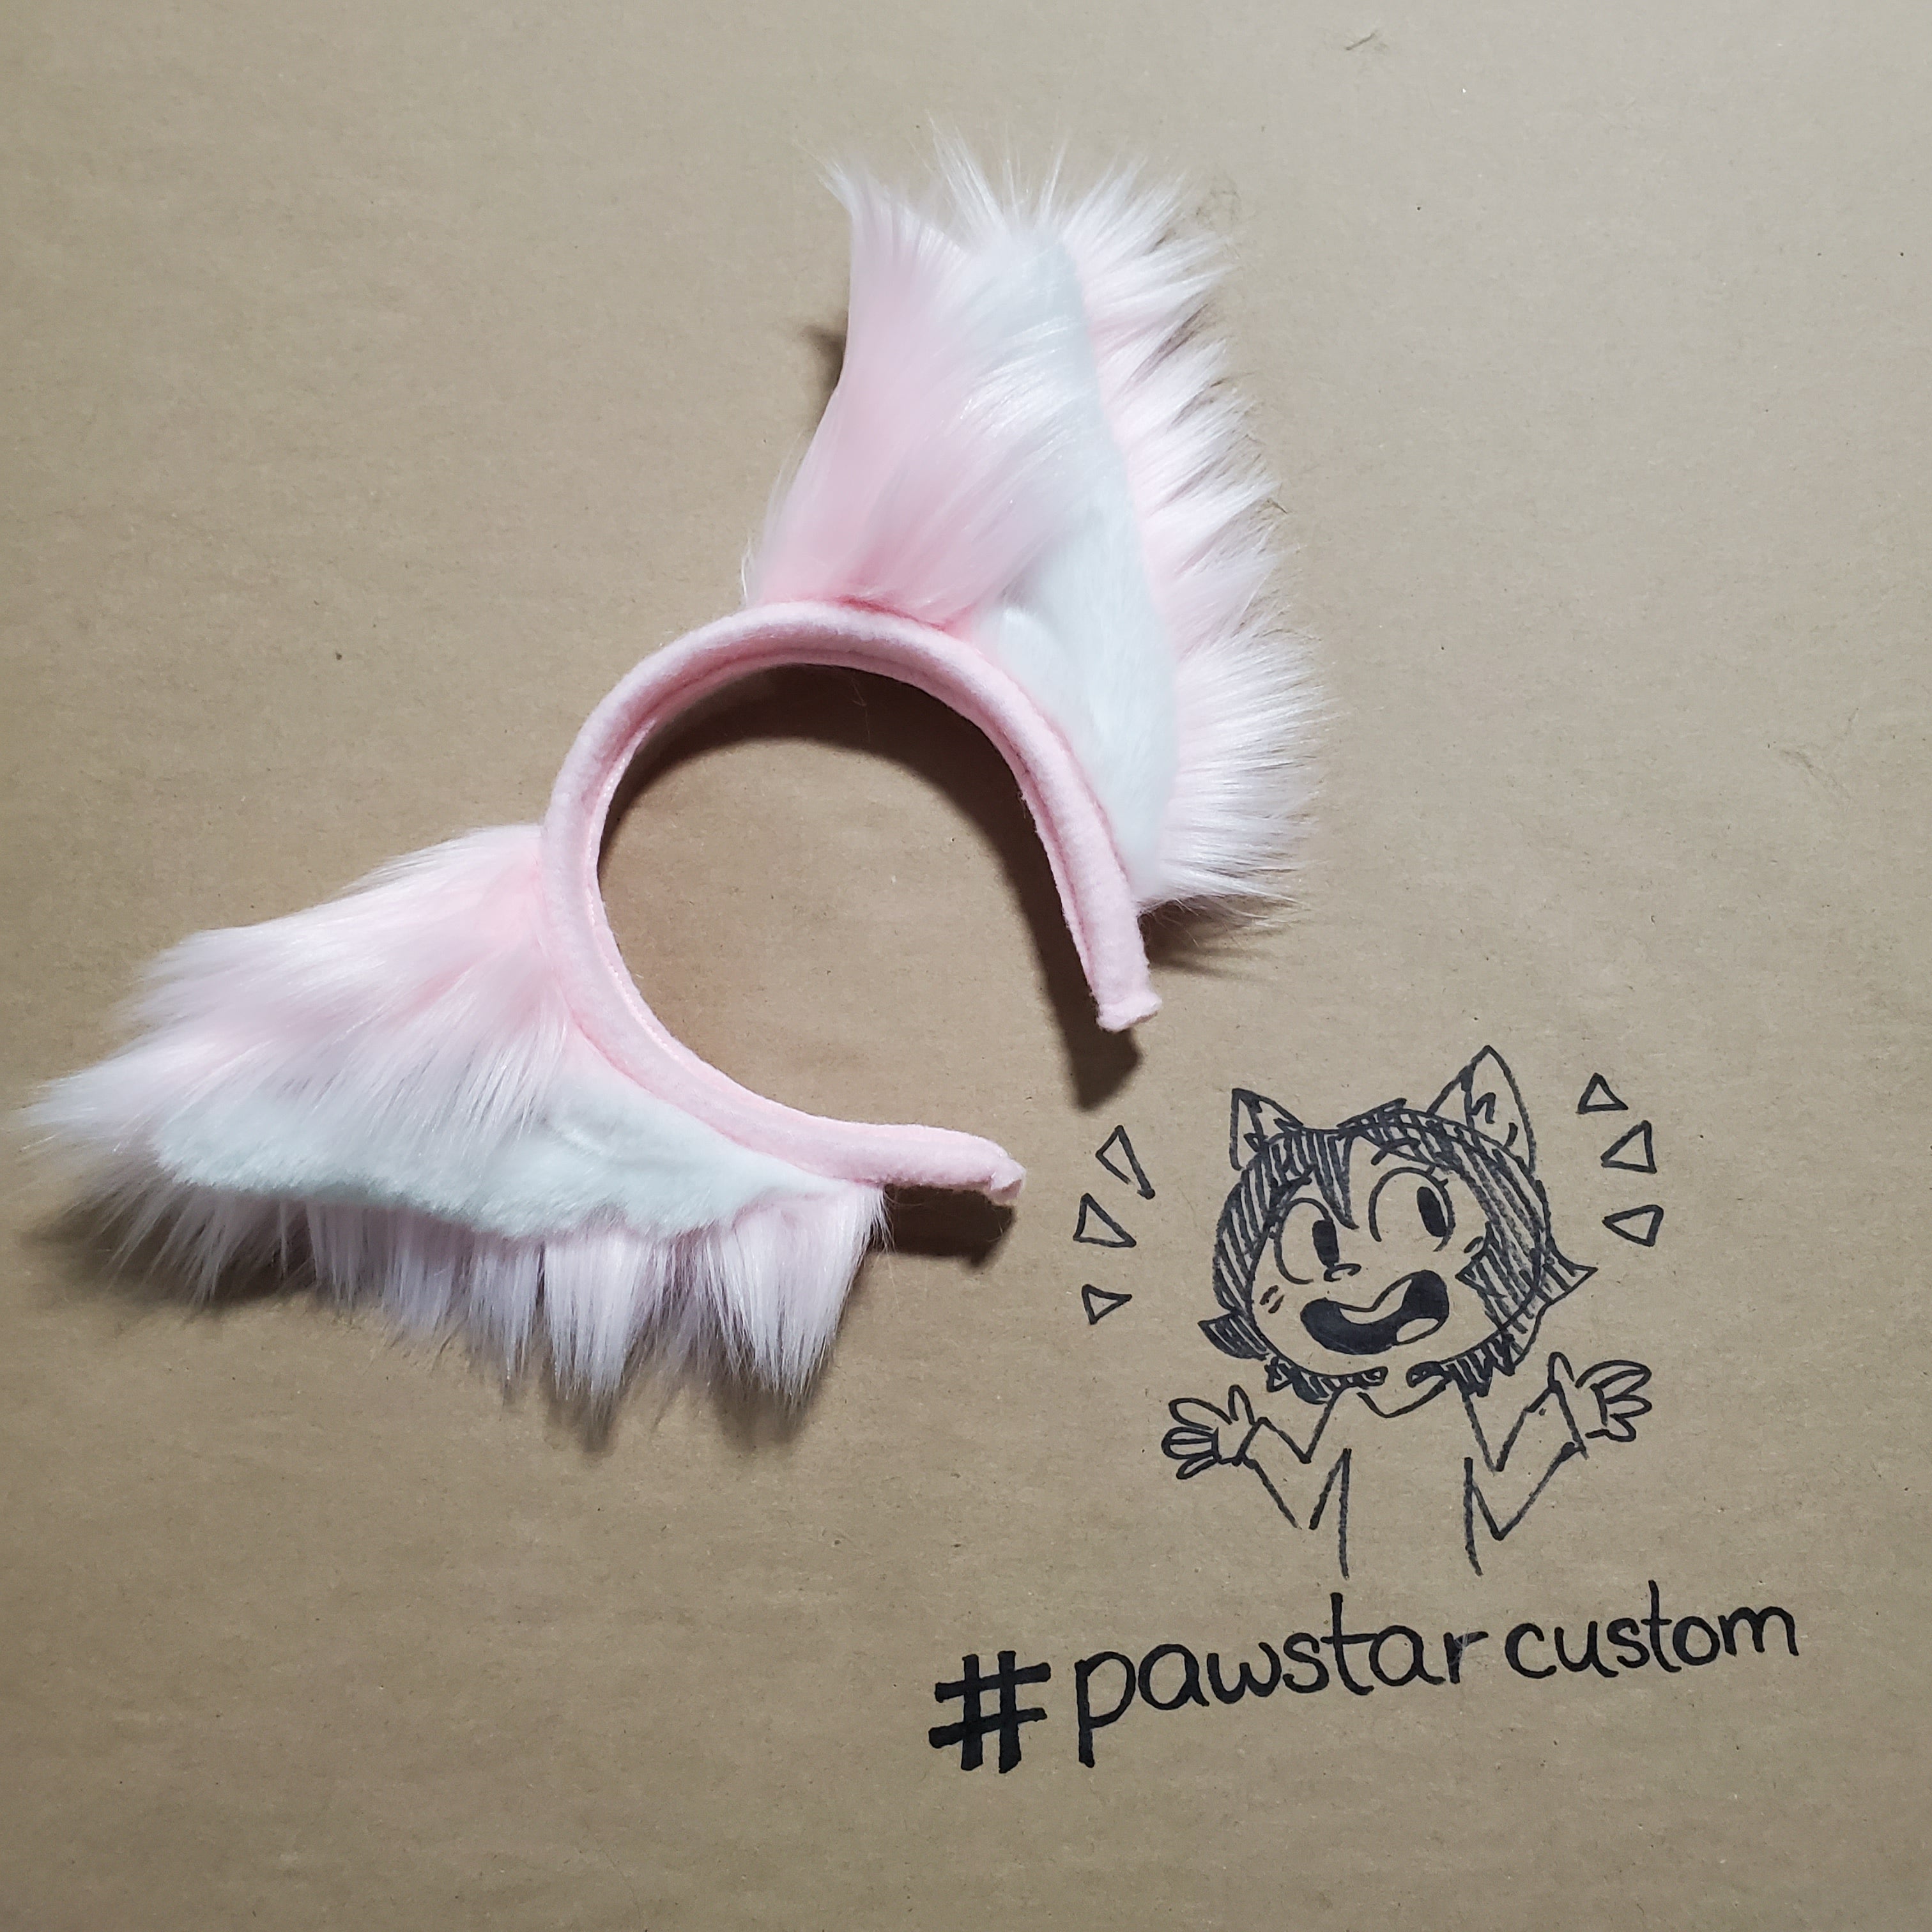 ★ Custom Order Request Form - Pawstar Pawstar  custom